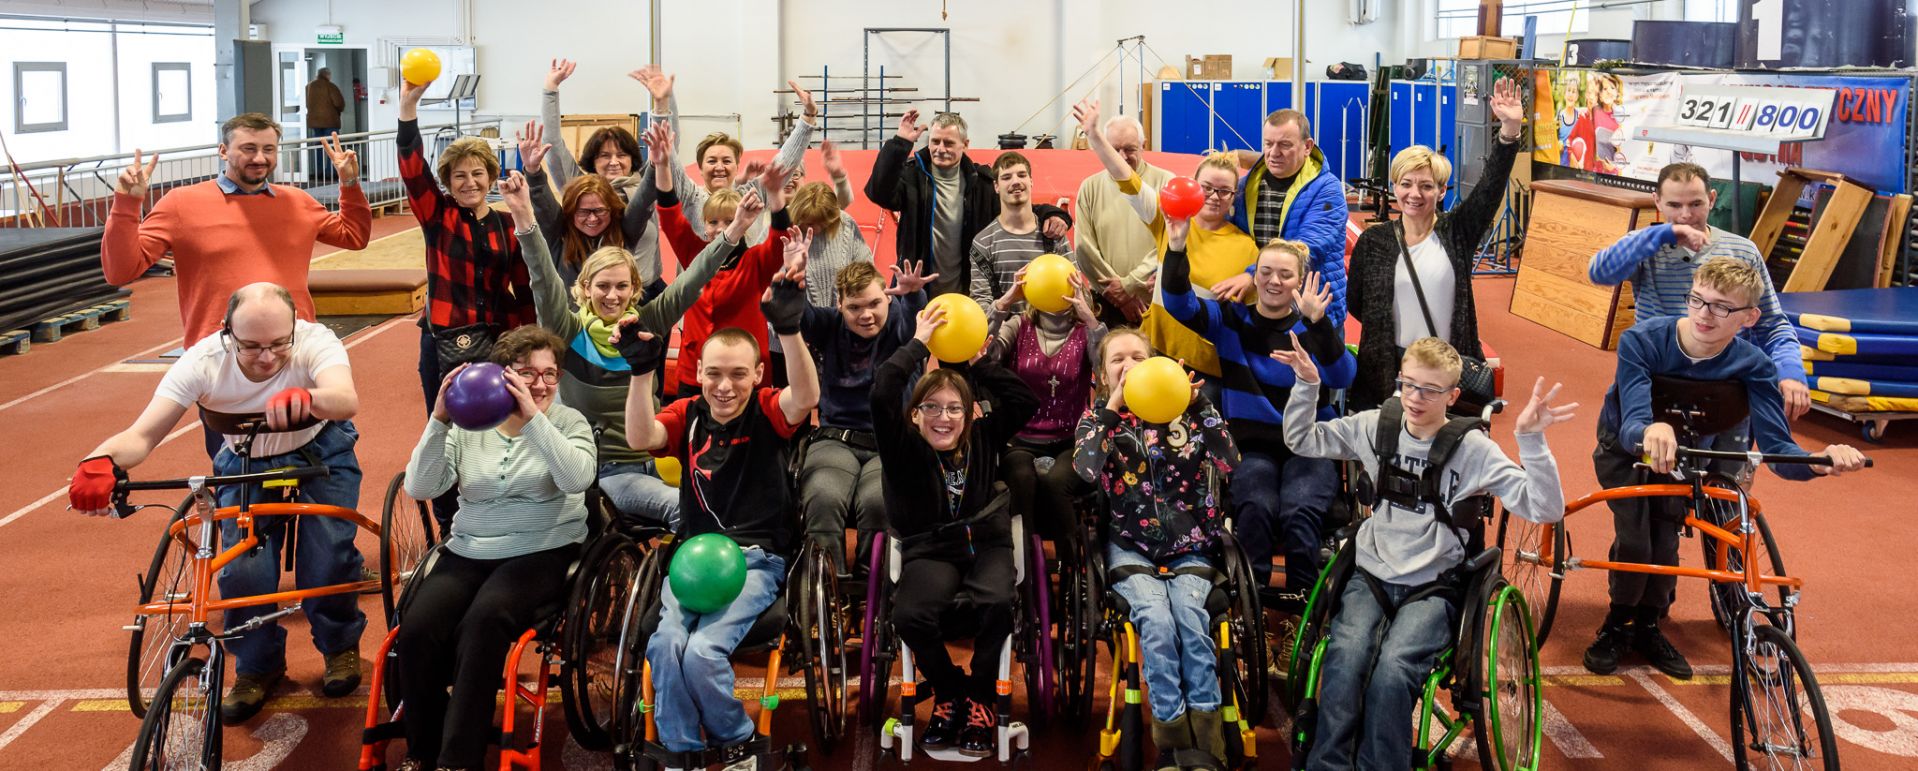 Zajęcia dla niepełnosprawnych w ramach Gdyńskiego Poruszenia 